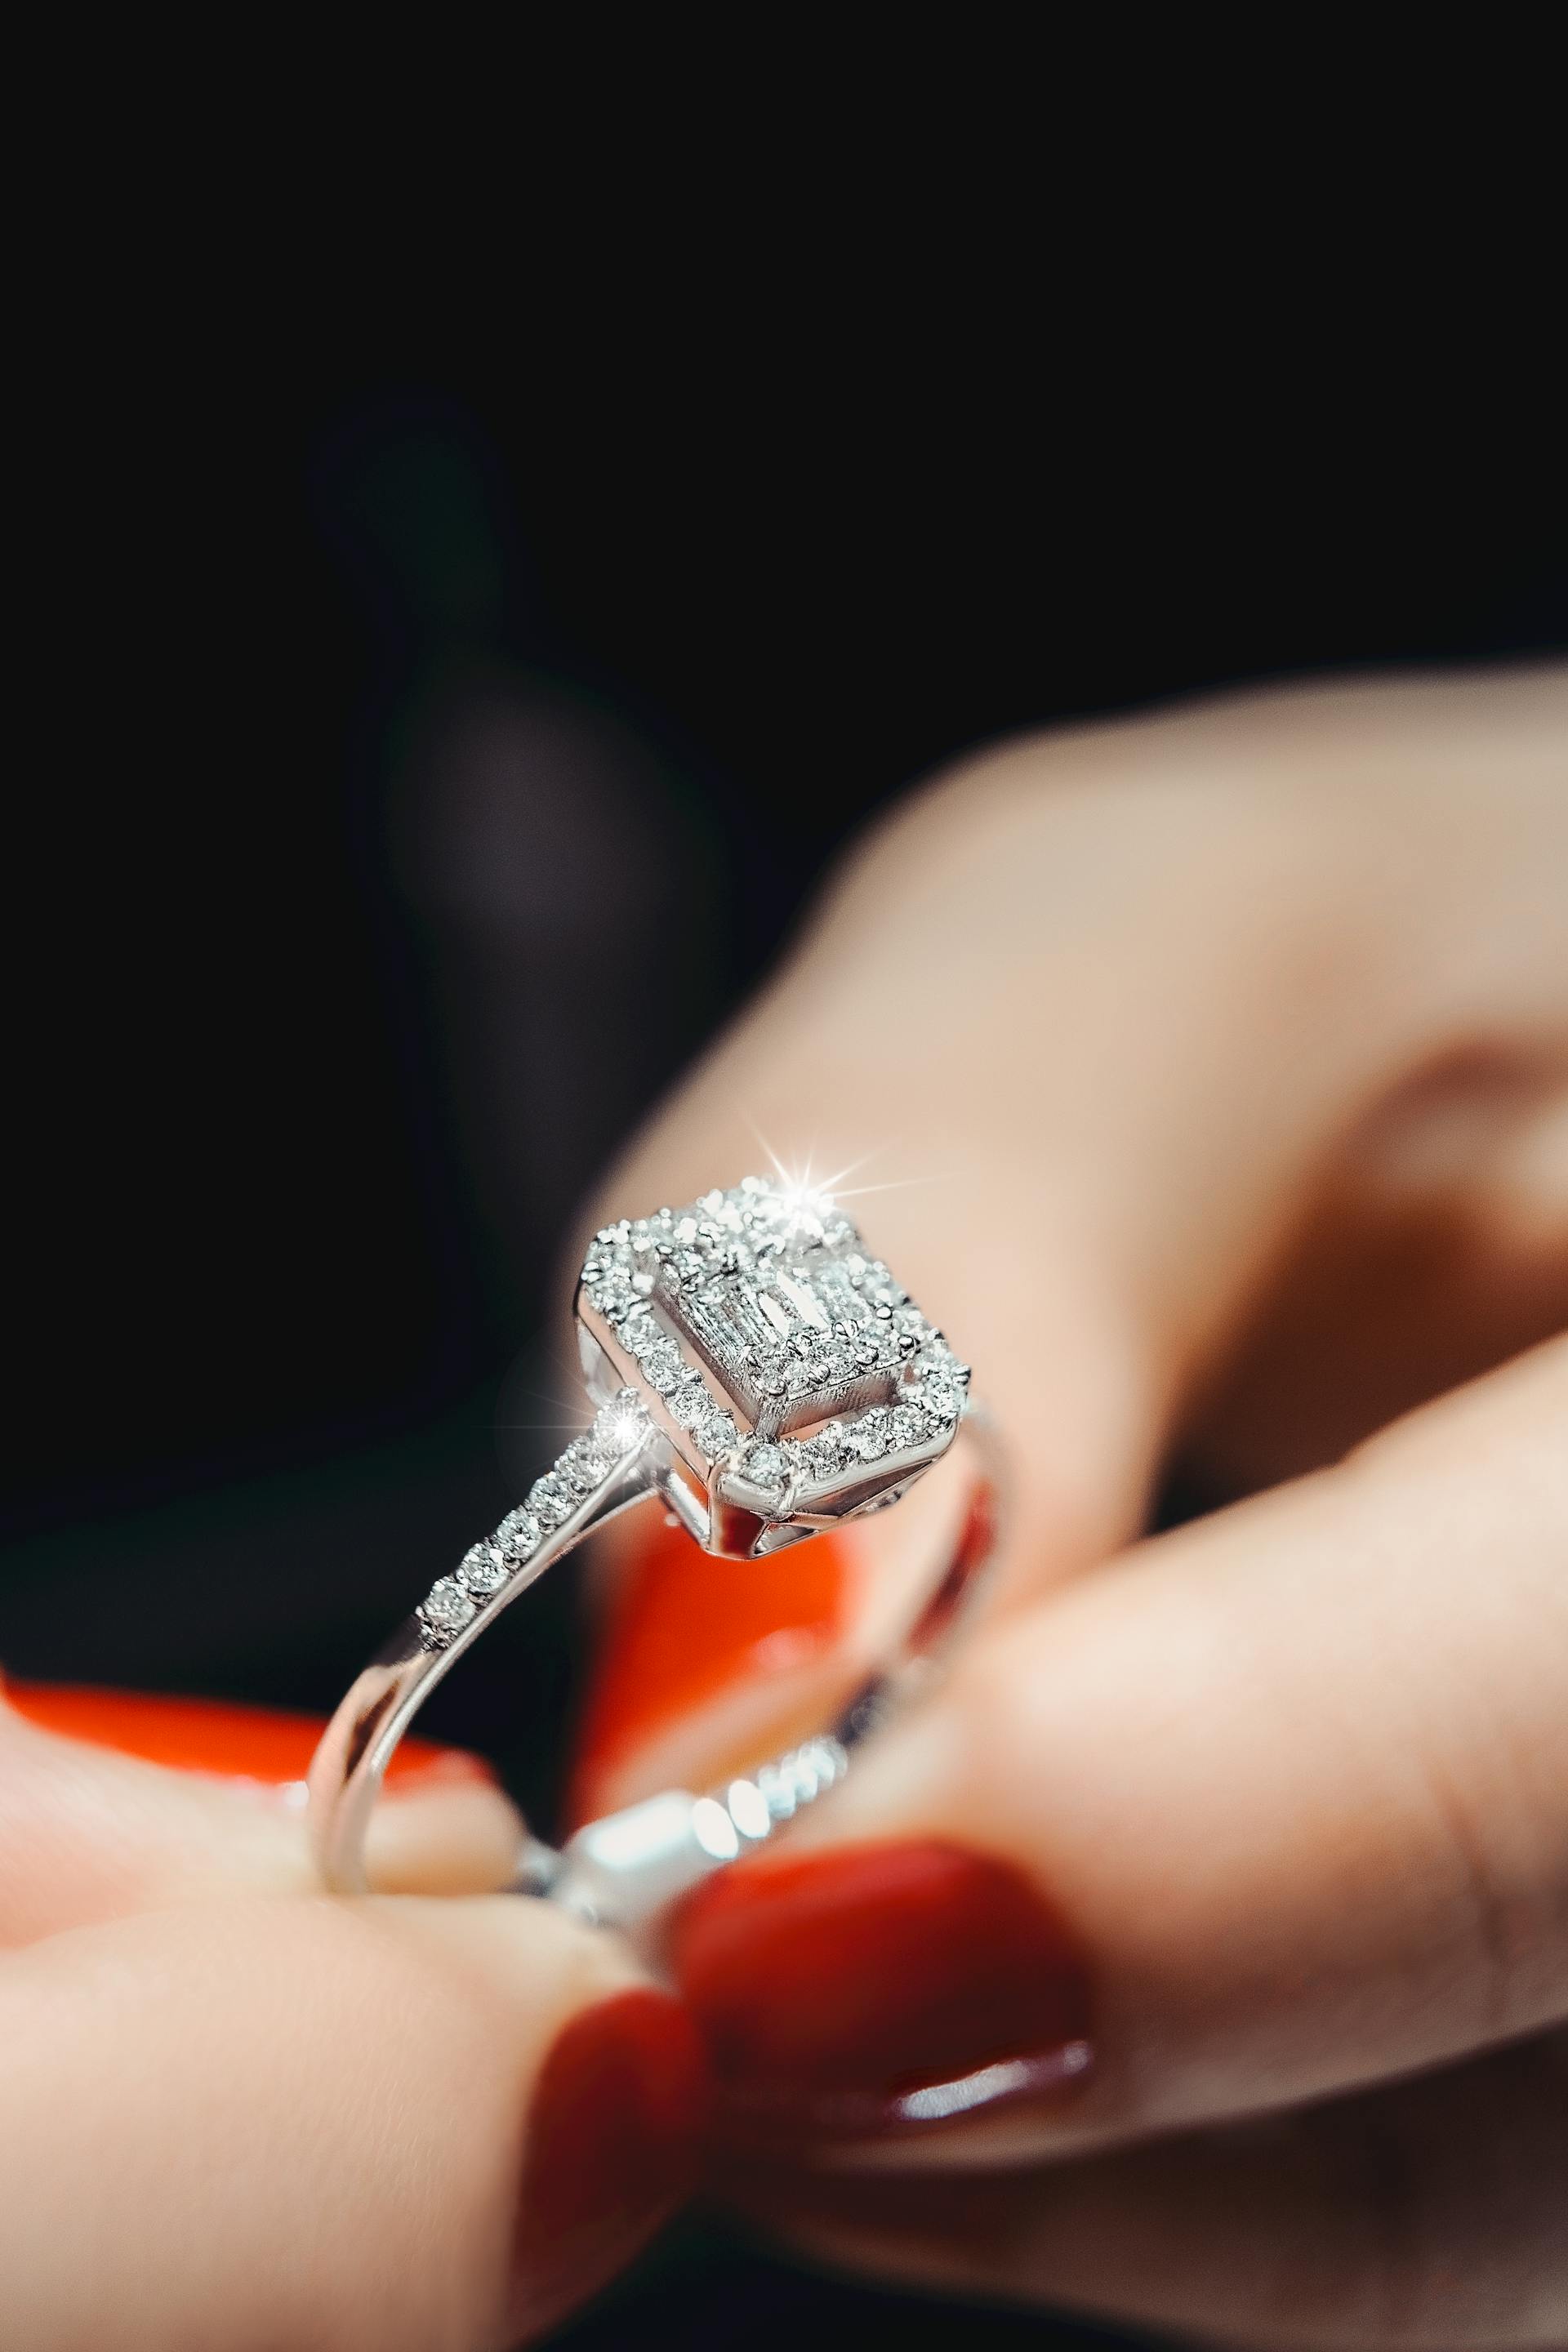 Eine Frau hält einen Diamantring | Quelle: Pexels